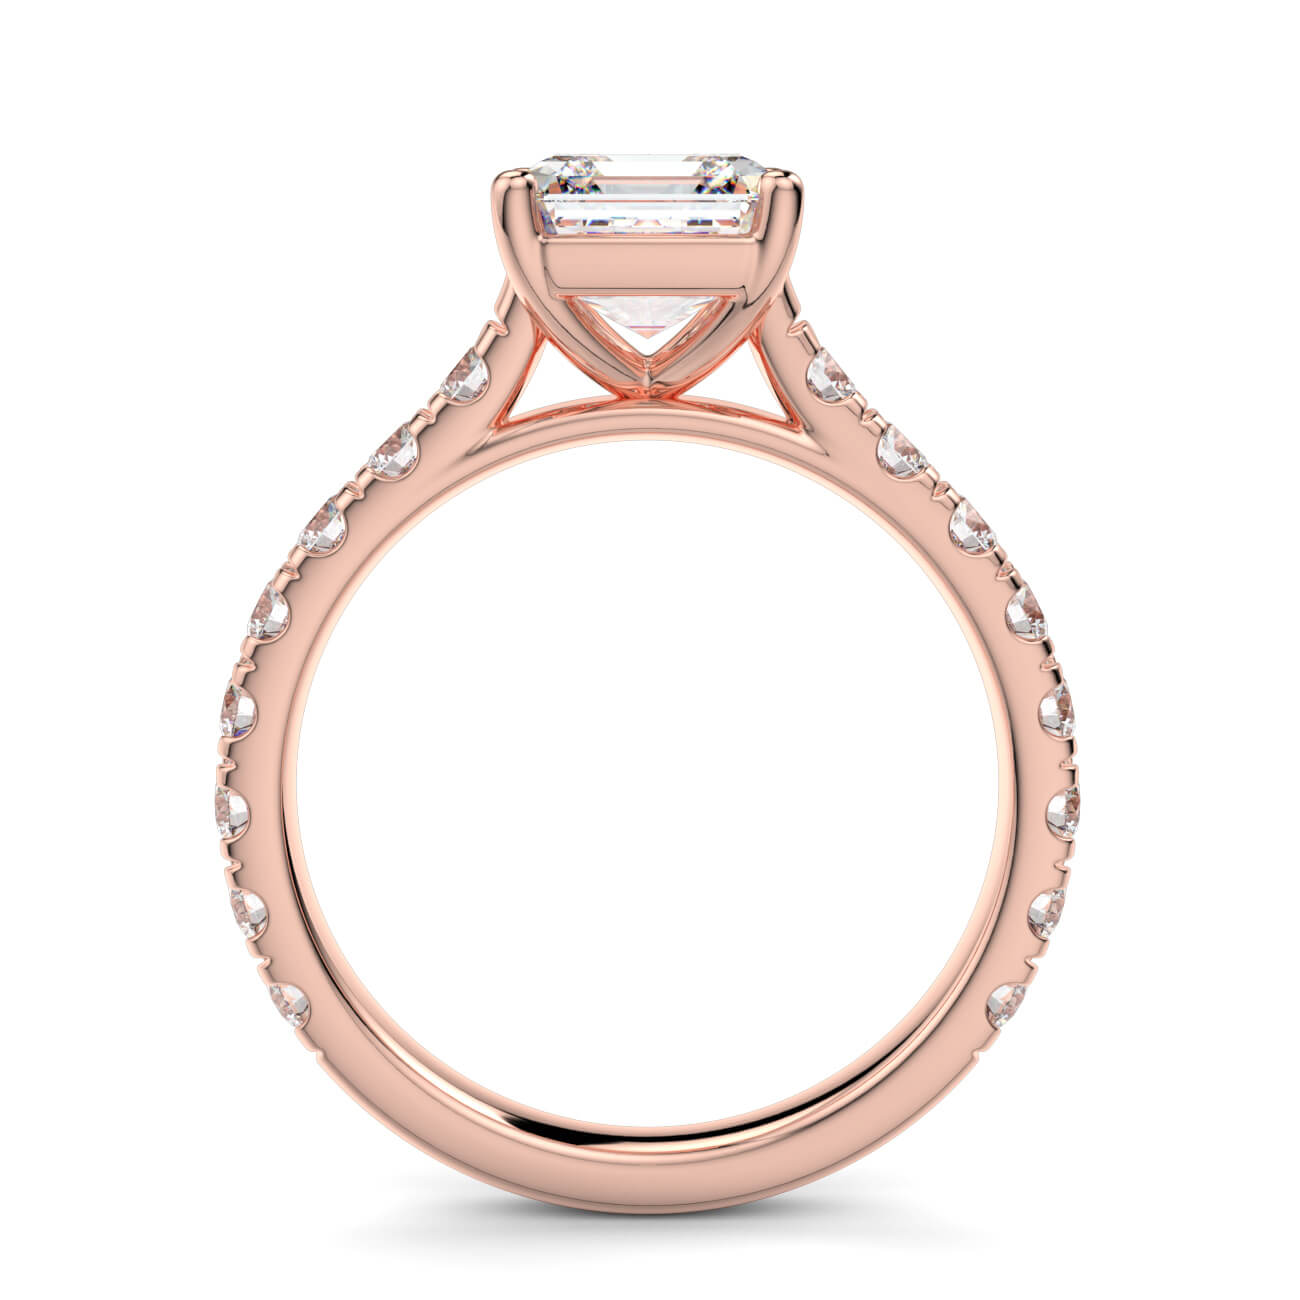 Prestige Asscher Cut Diamond Engagement Ring In Rose Gold – Australian Diamond Network